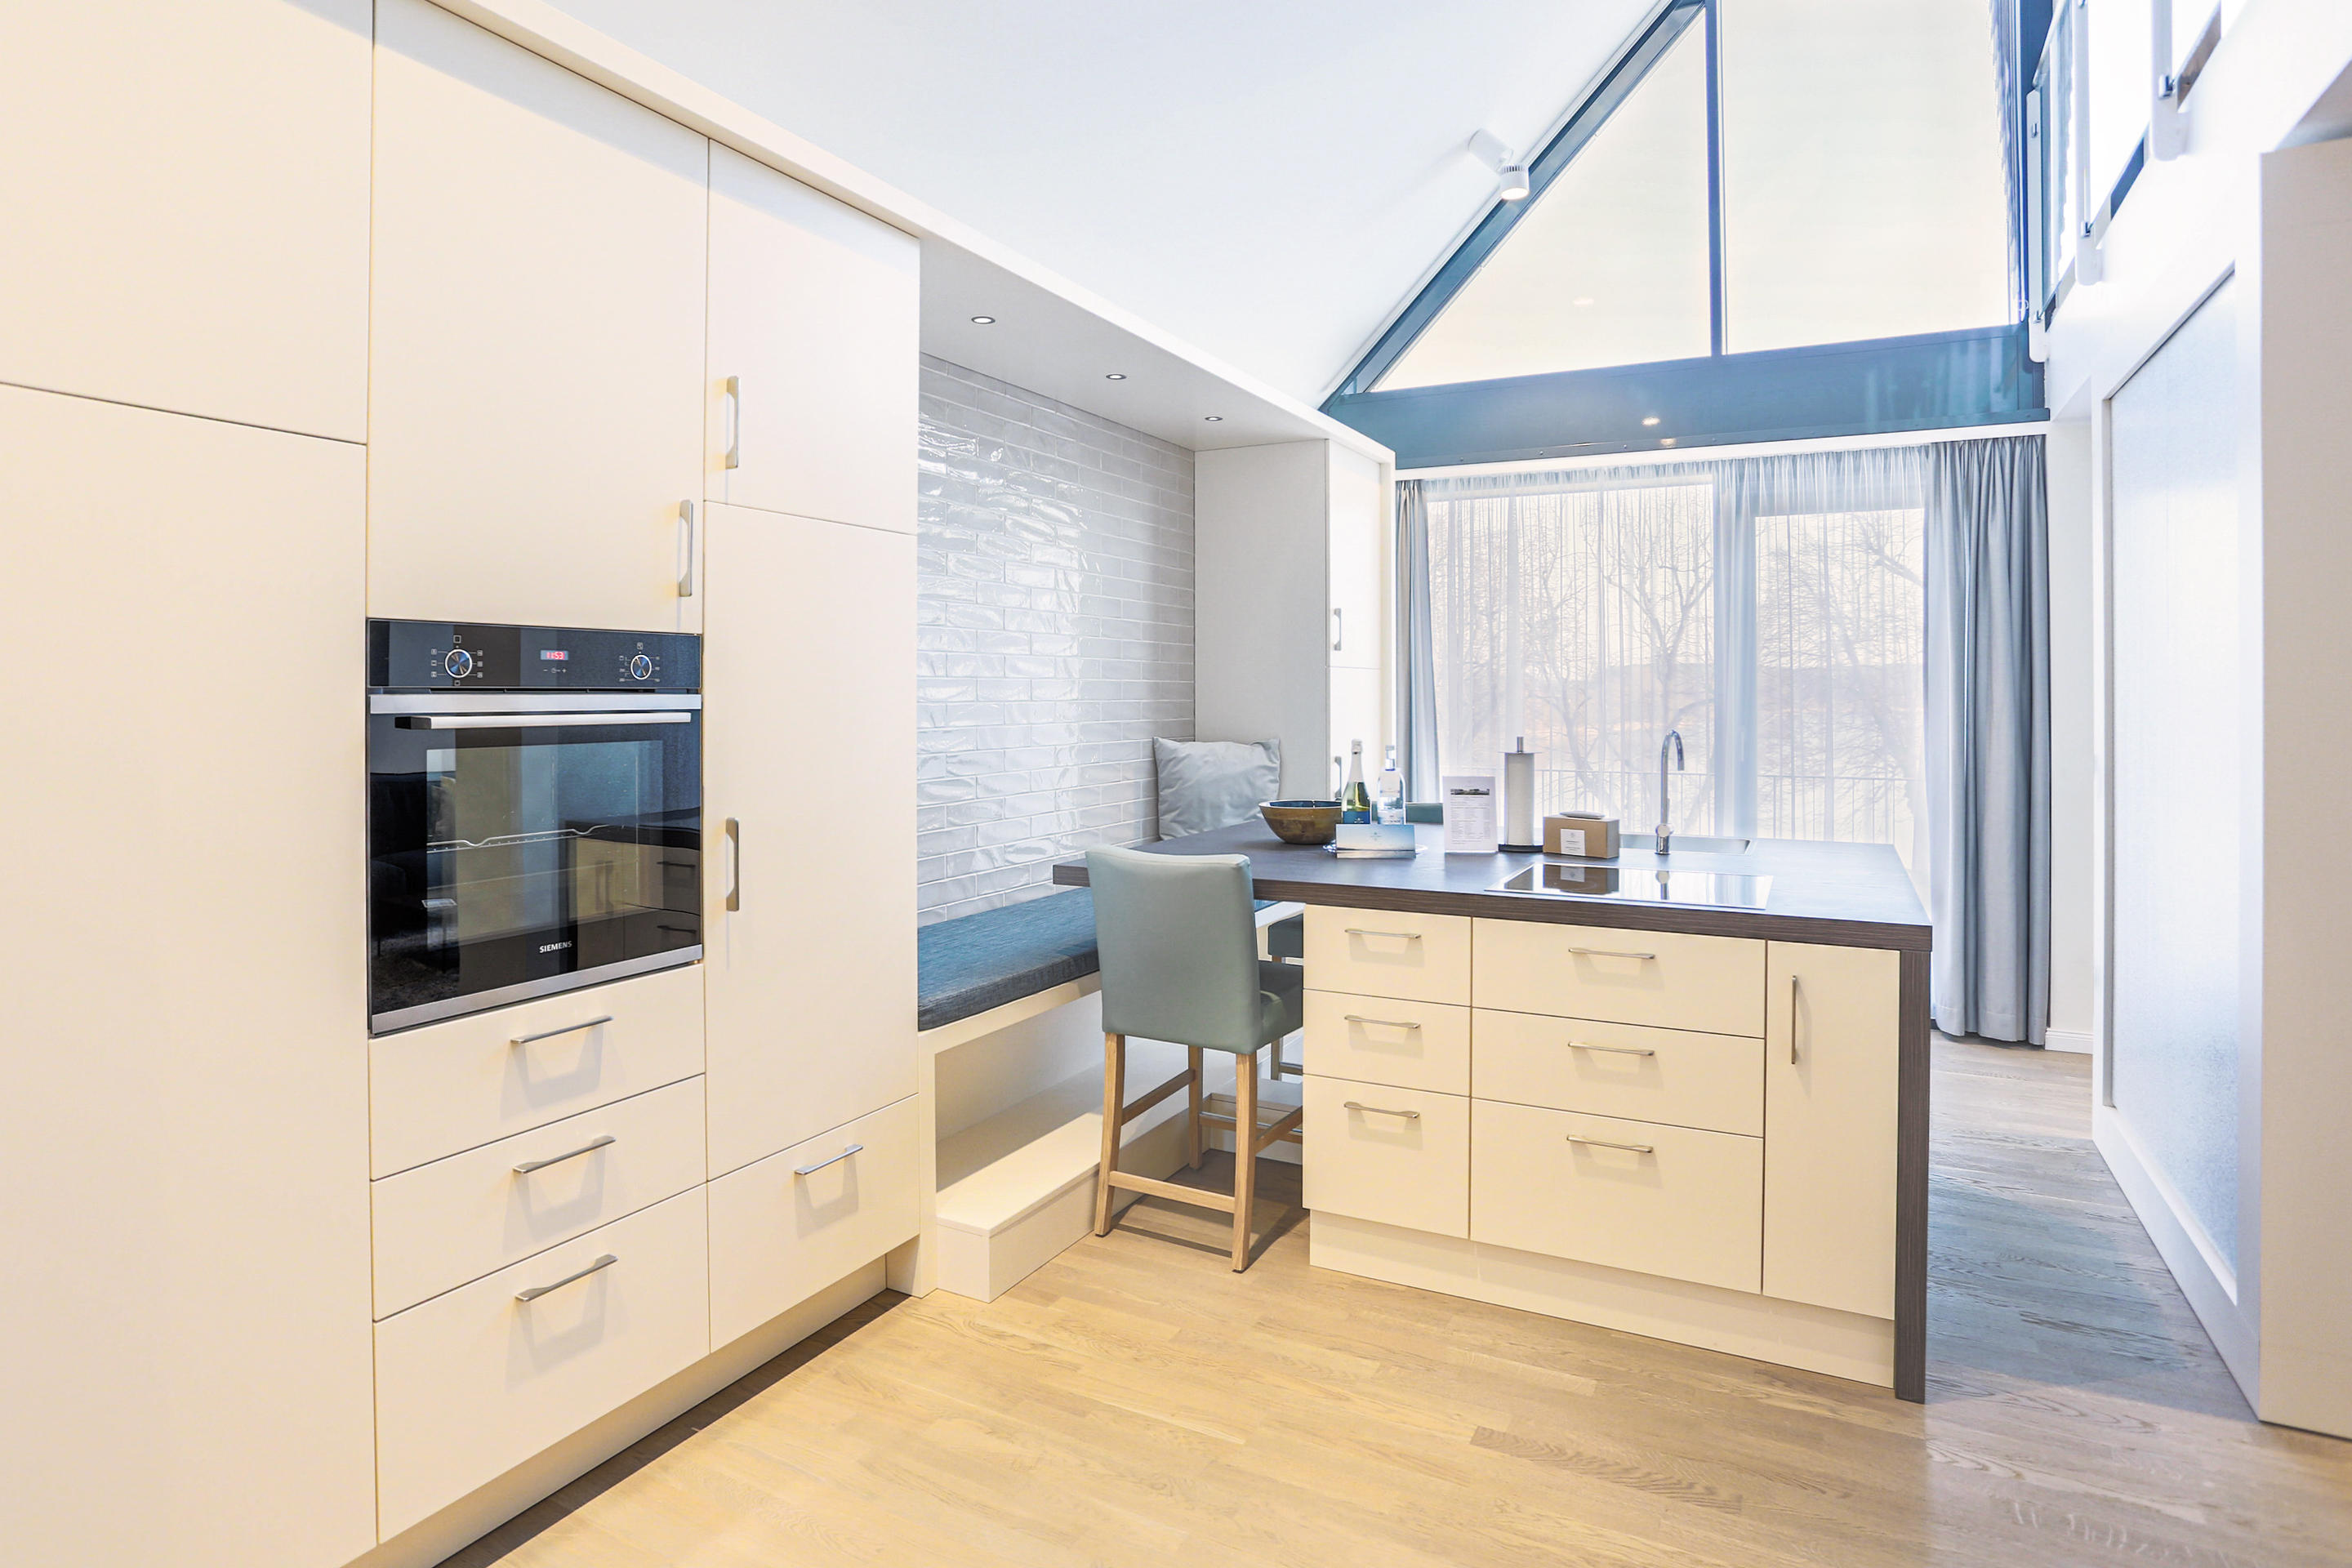 Kompass Maisonette Suite - Mit einer Größe von 71 qm, bietet die Maisonette Suite mit dem hochwertigen Interieur und der gehobenen Ausstattung viel Raum für Ihre Auszeit.